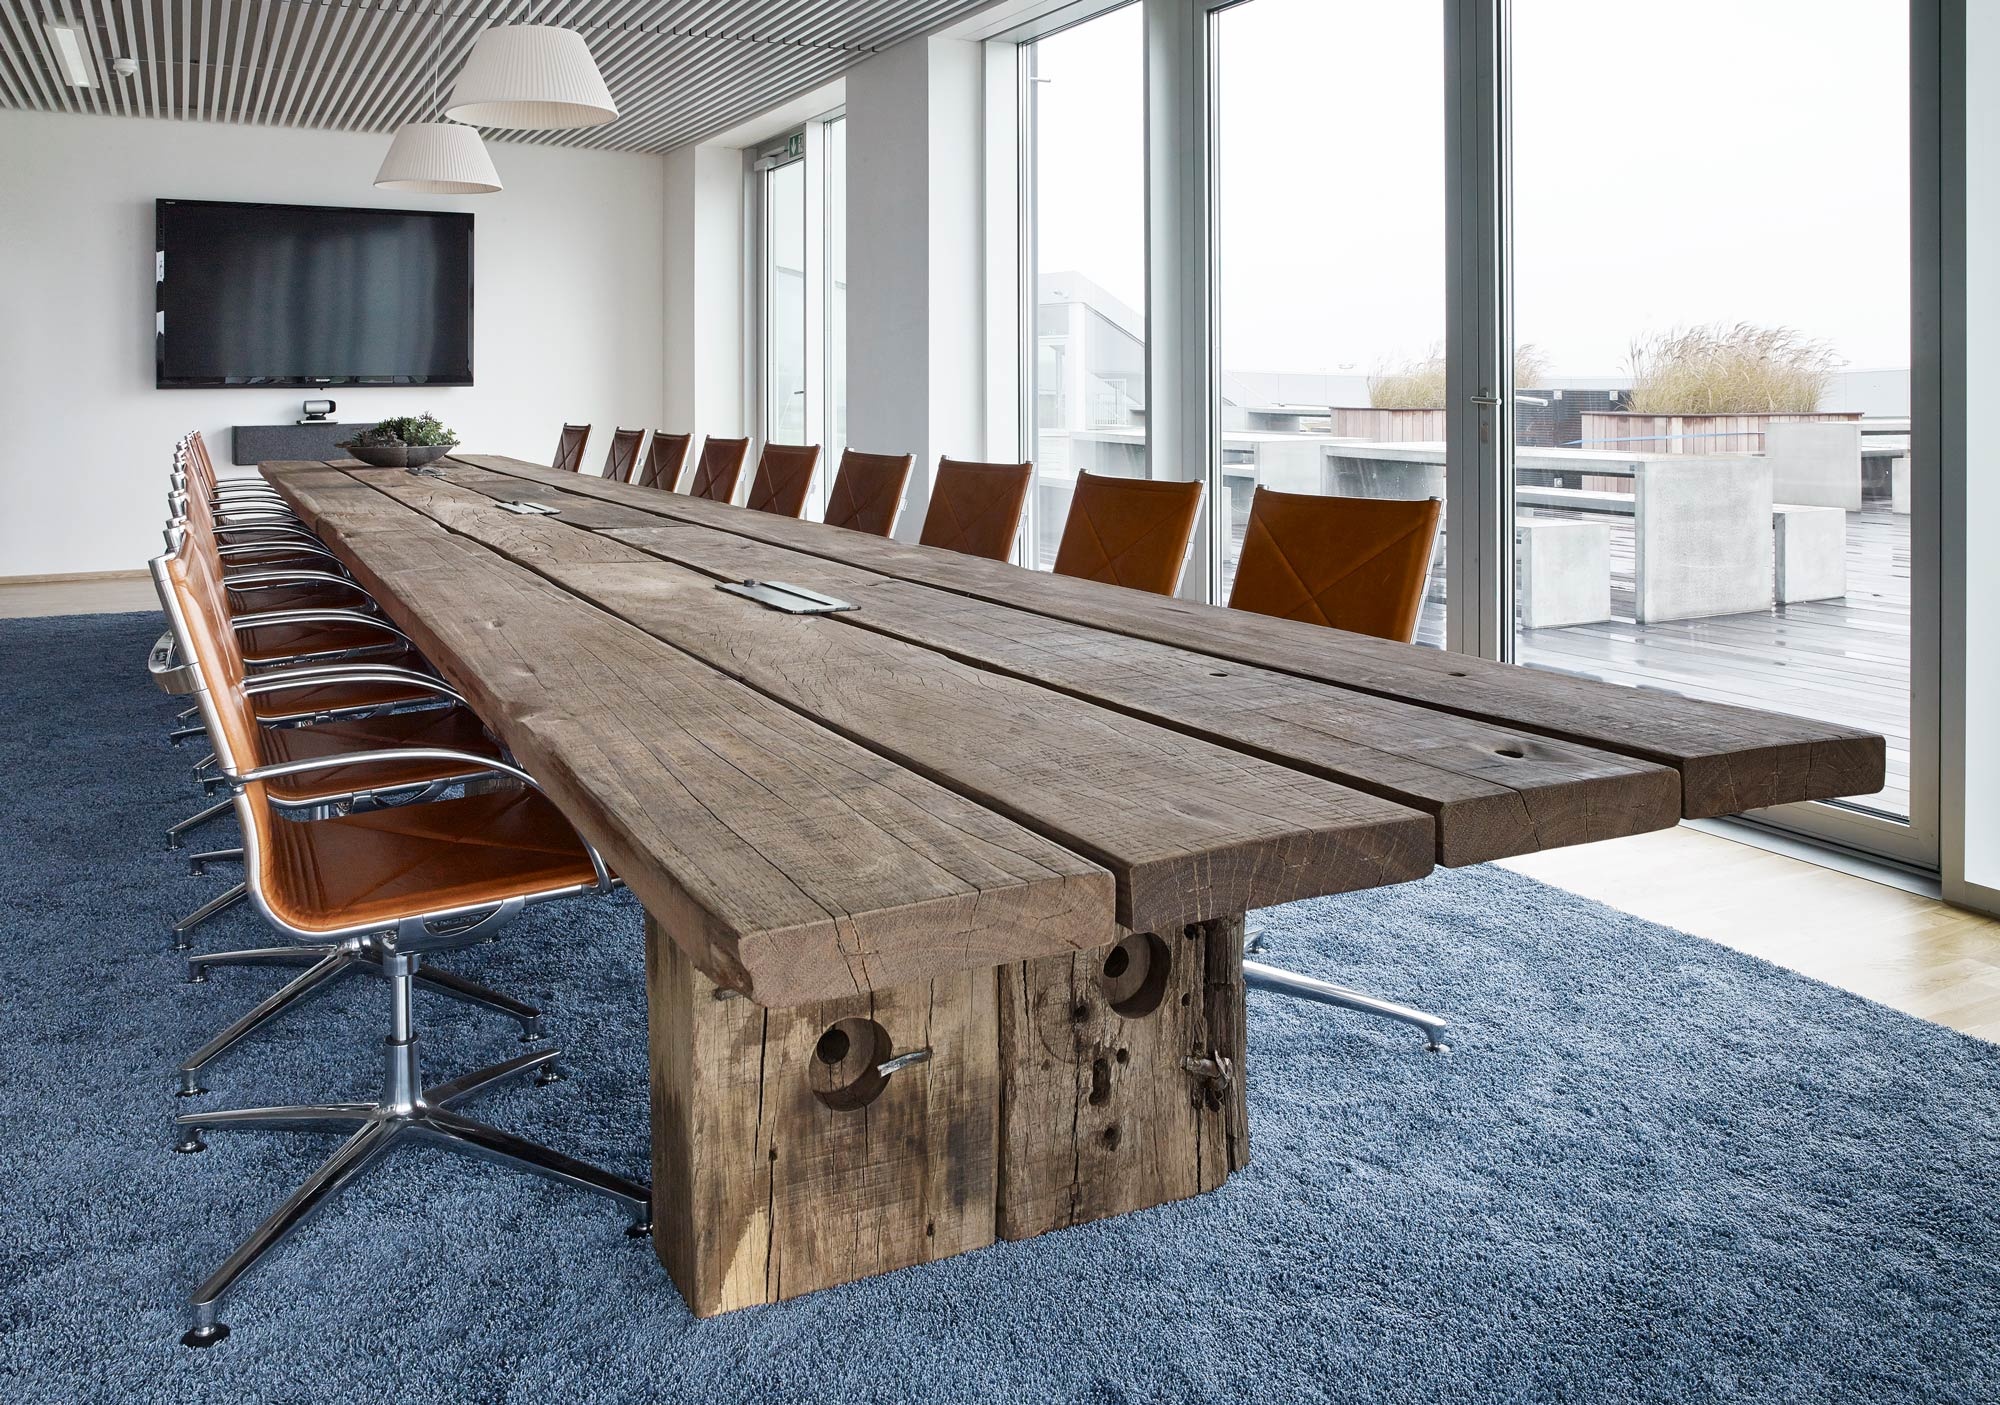 eksklusivt-langt-plankebord-laves-paa-maal-i-unikt-dansk-design-af-azobétrae